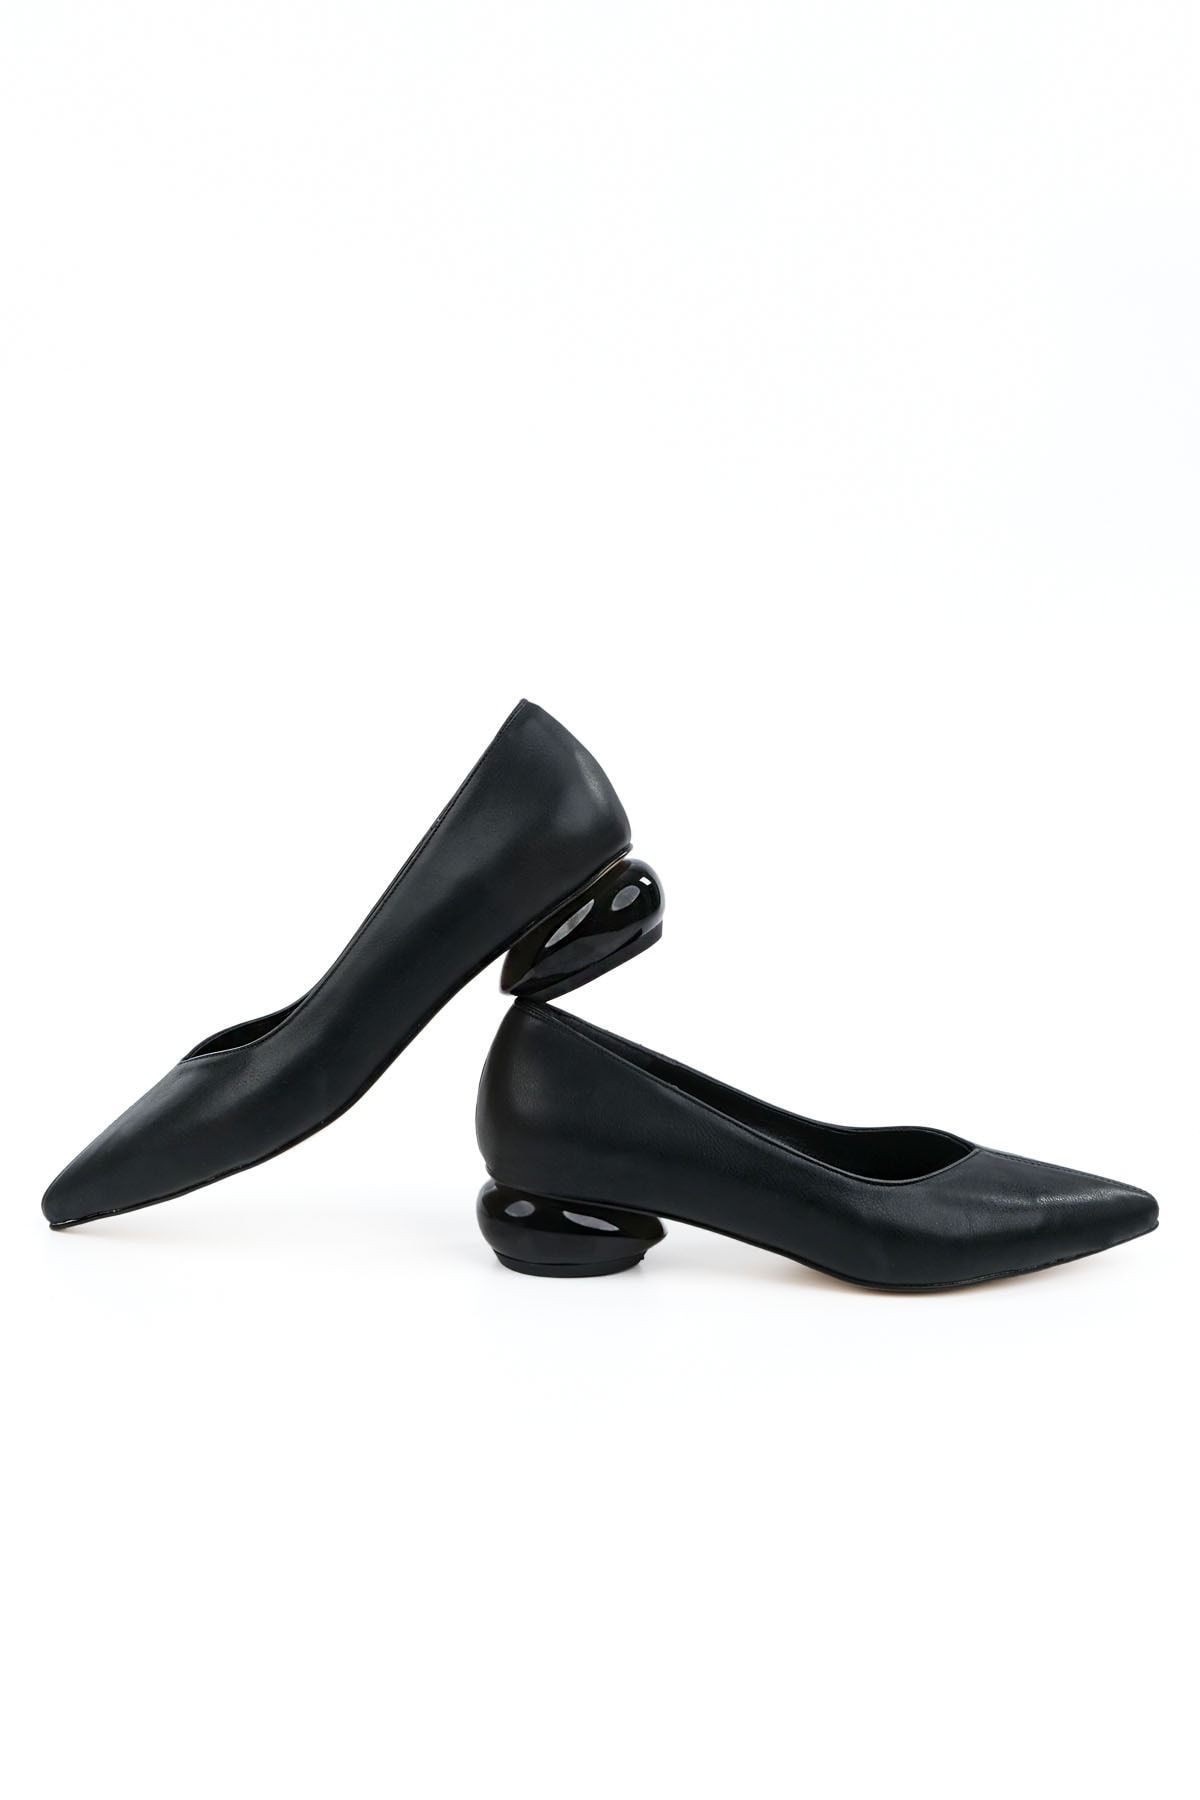 Marjin Kadın Günlük Klasik Topuklu Ayakkabı Sivri Burun Evara siyah